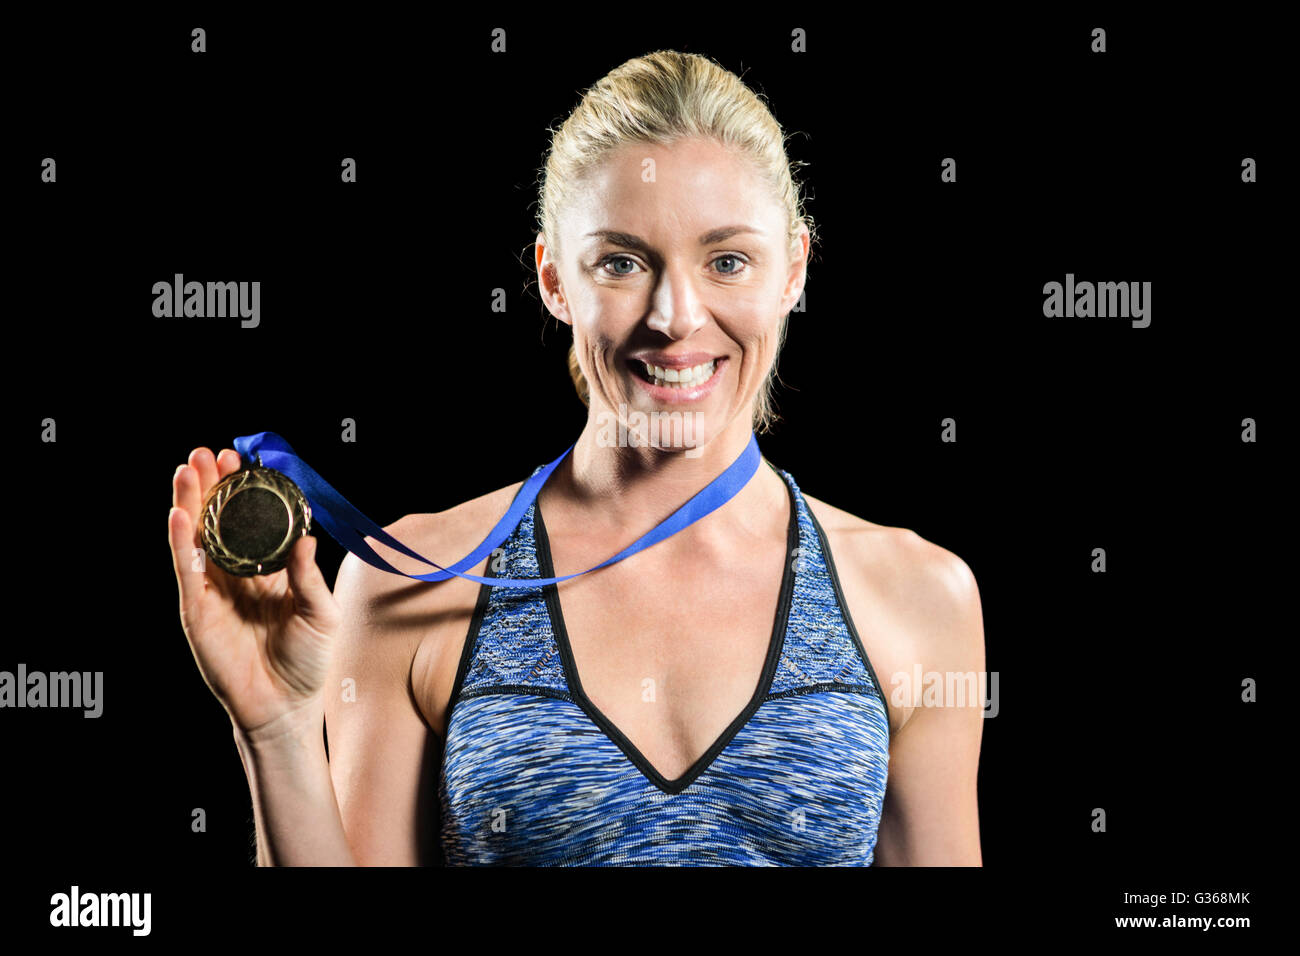 Athlète féminin posant avec médaille d'or autour du cou Banque D'Images